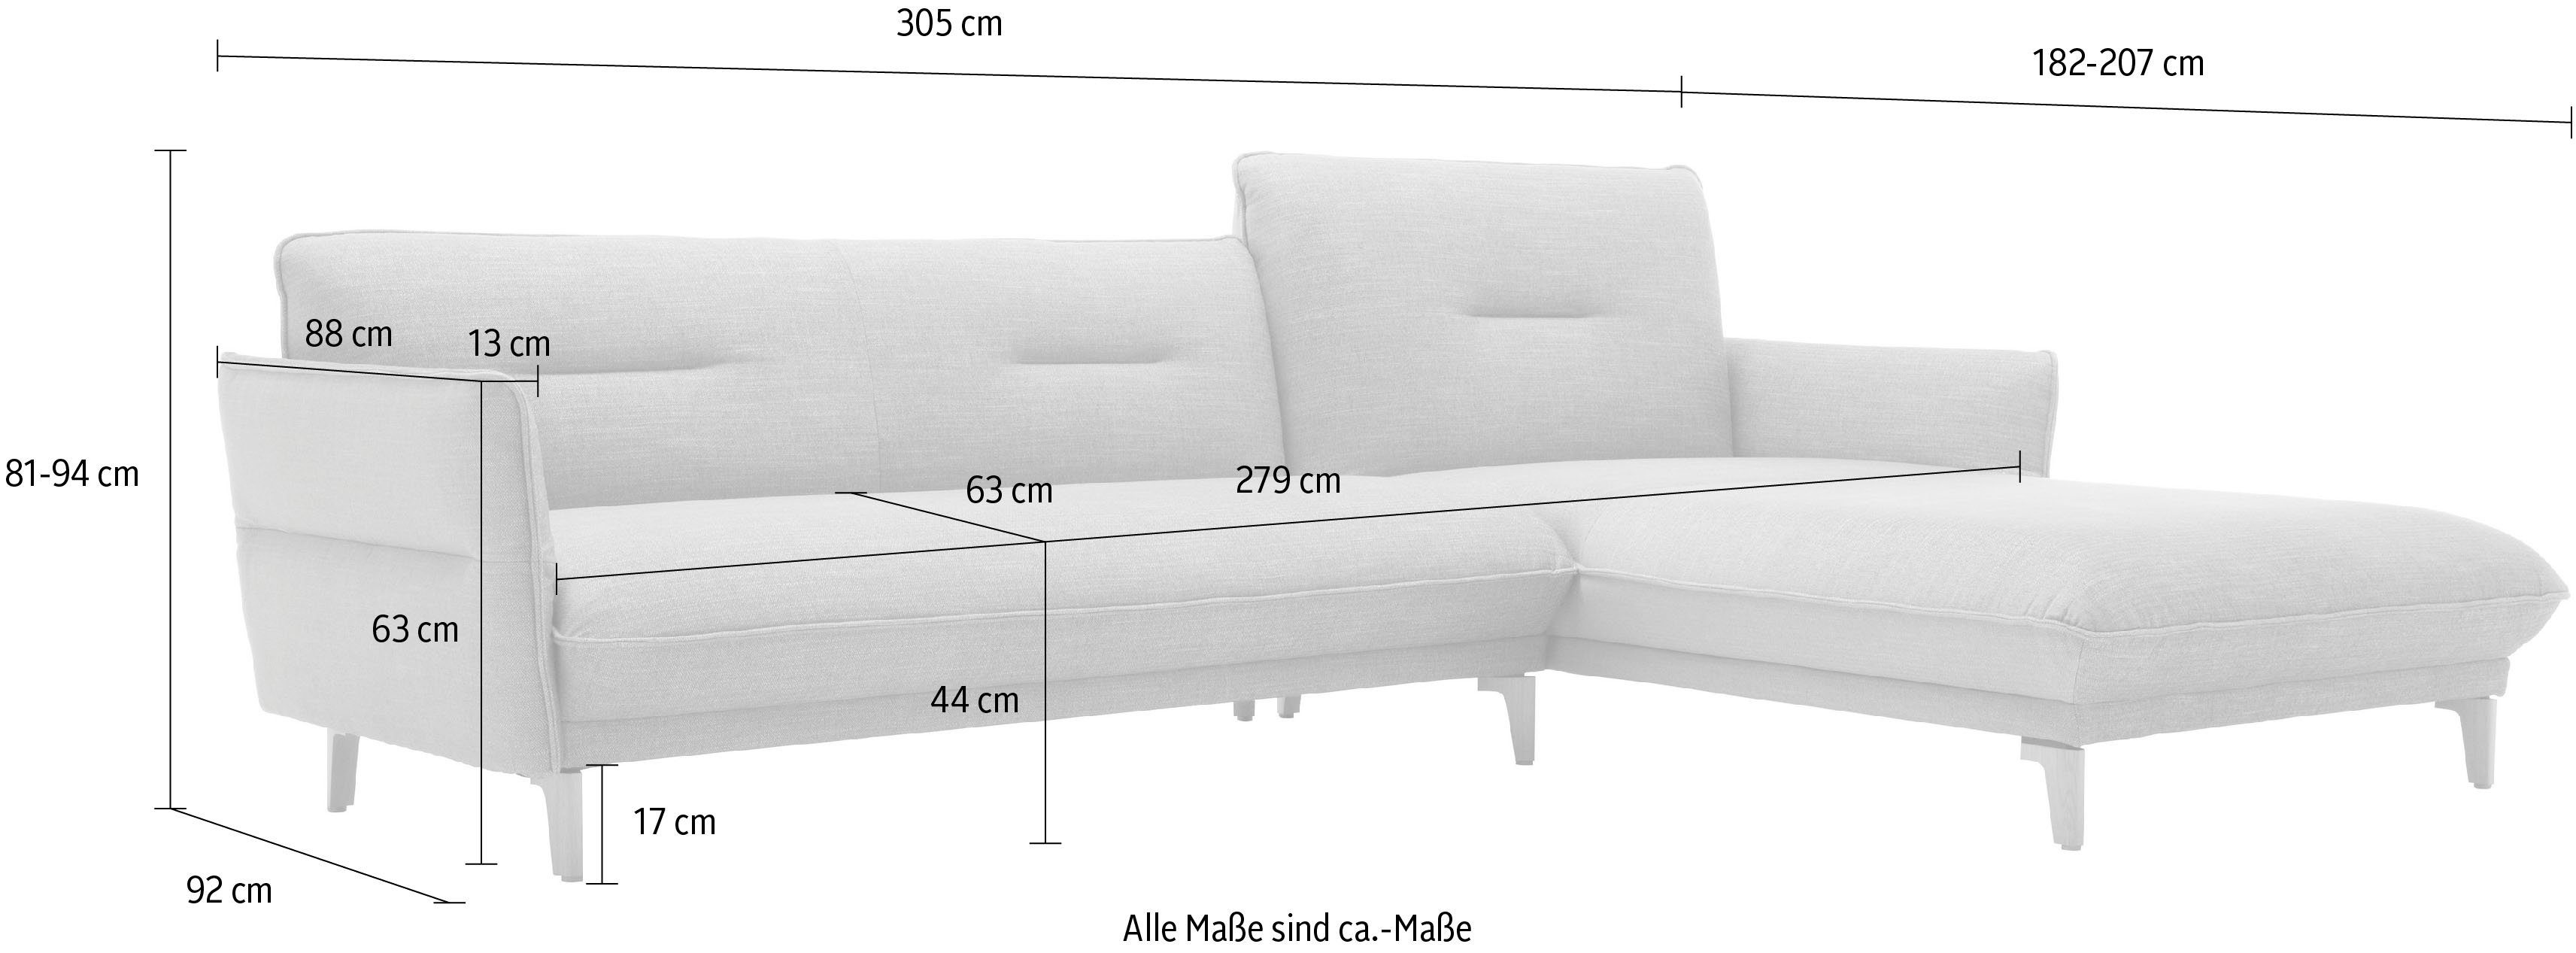 mit Rücken 305 Neigefunktion, 062 cm - 72 hoher Recamiere Ecksofa ozeanblau sofa hs.430, Breite hülsta